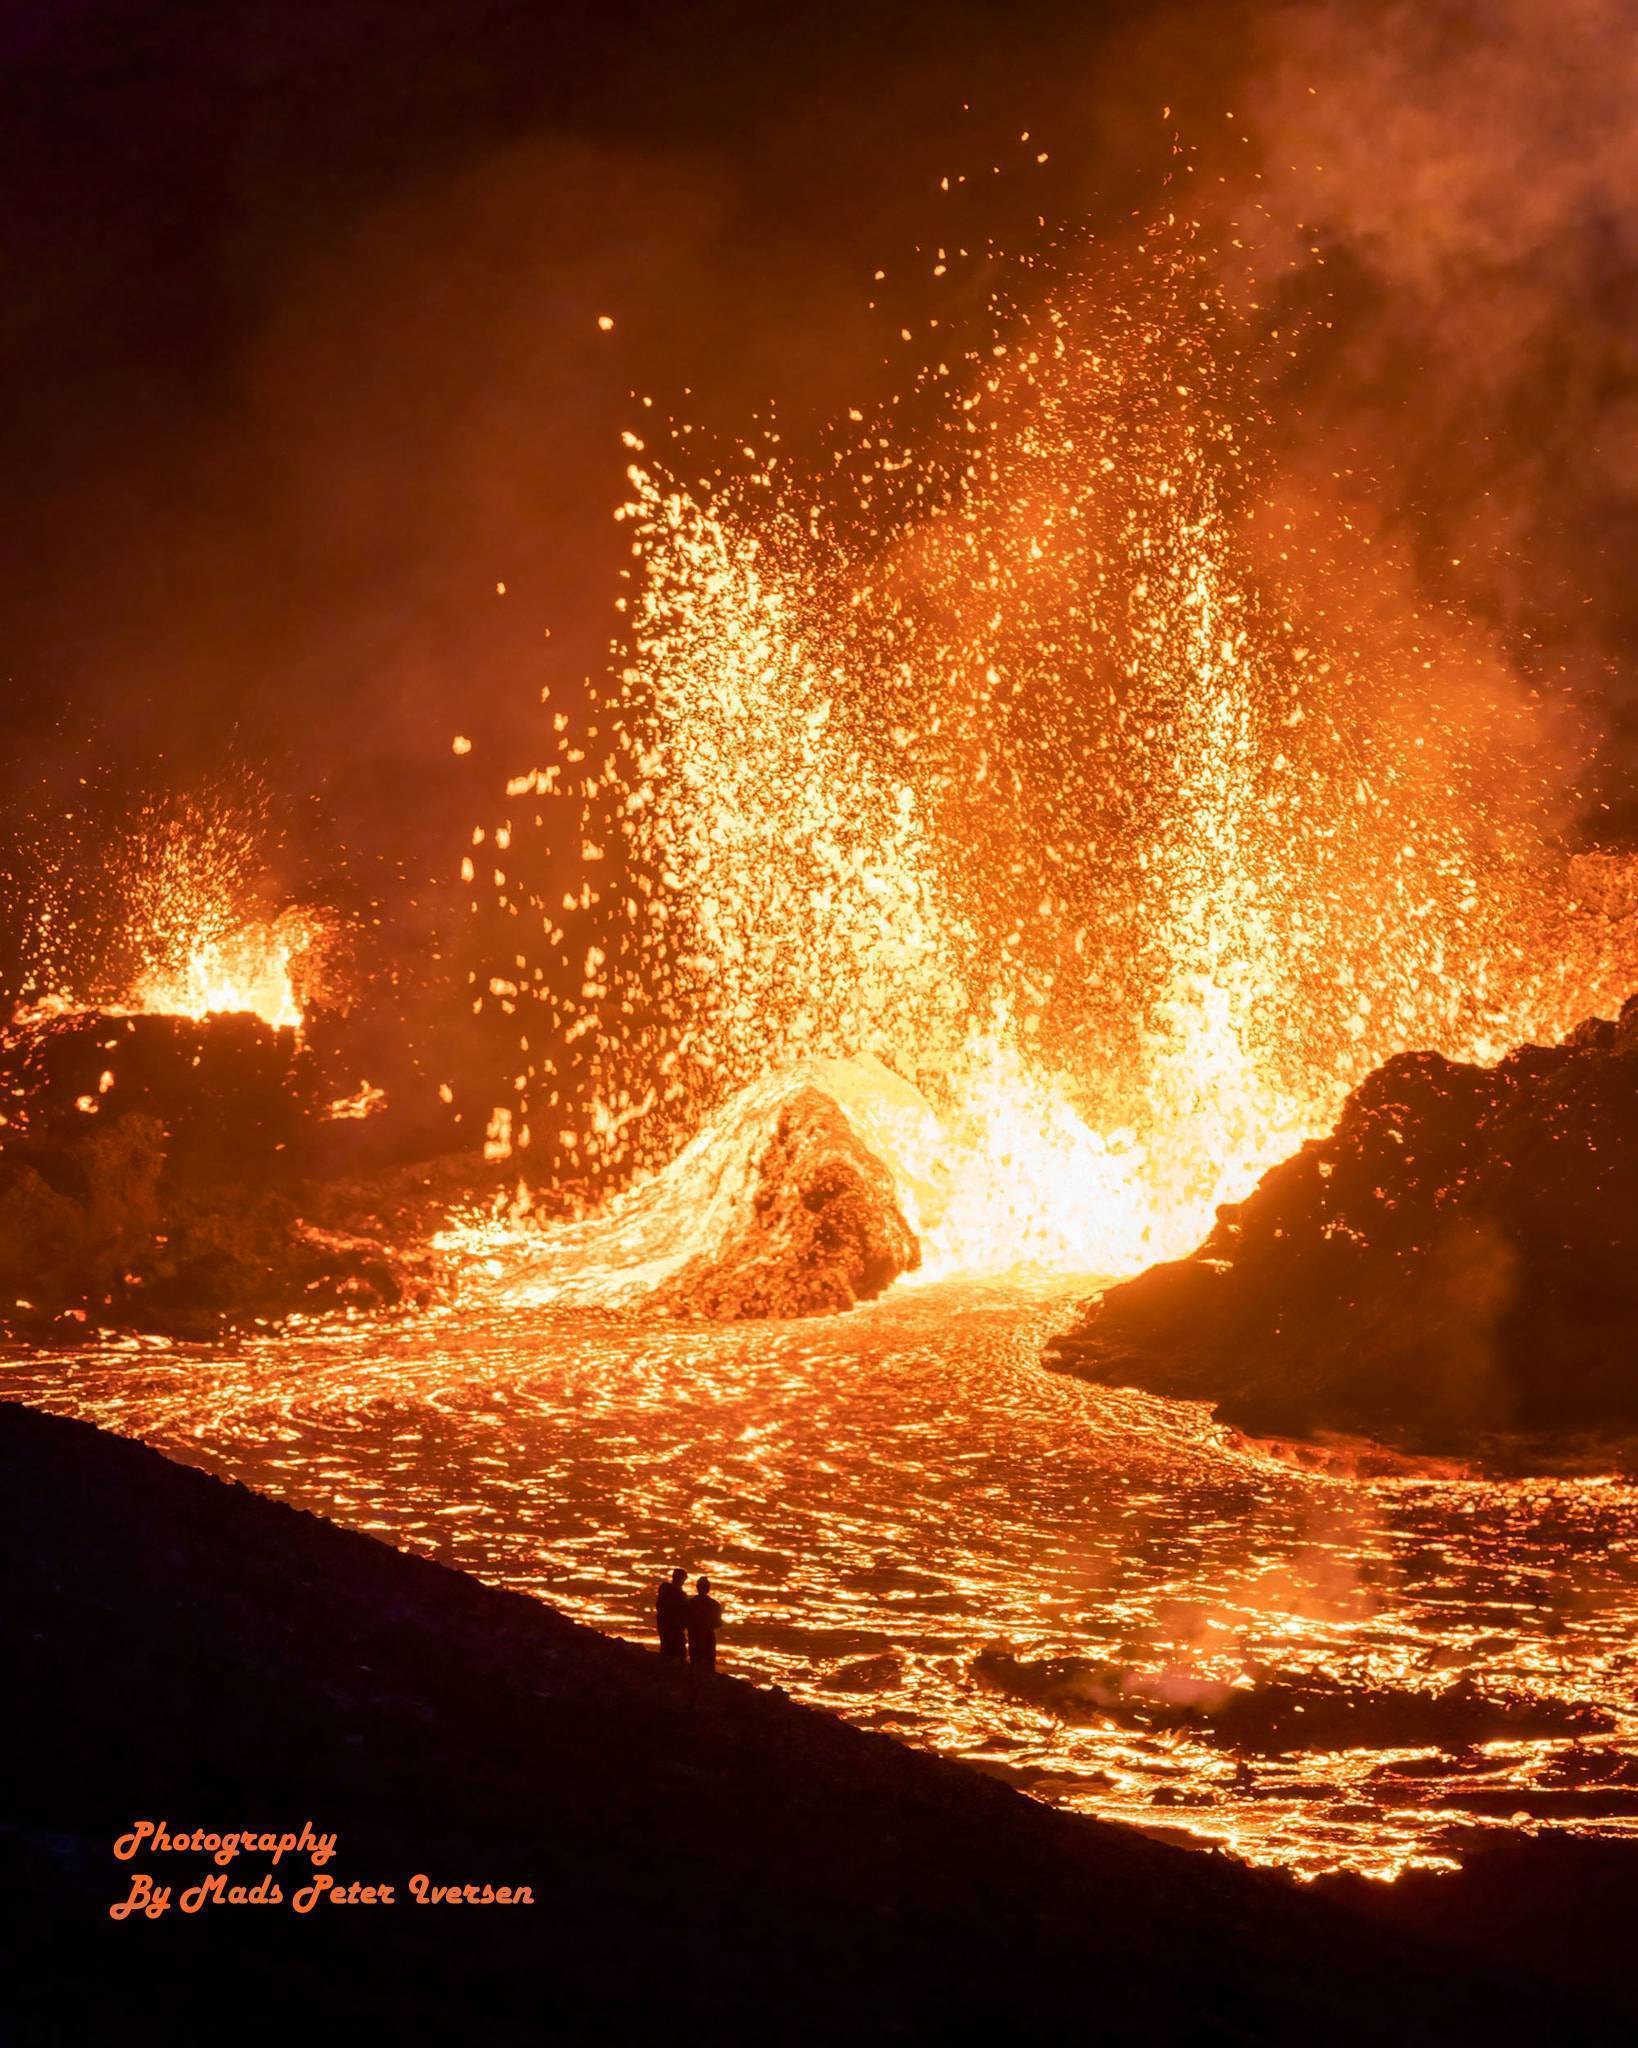 火山喷发照片图片